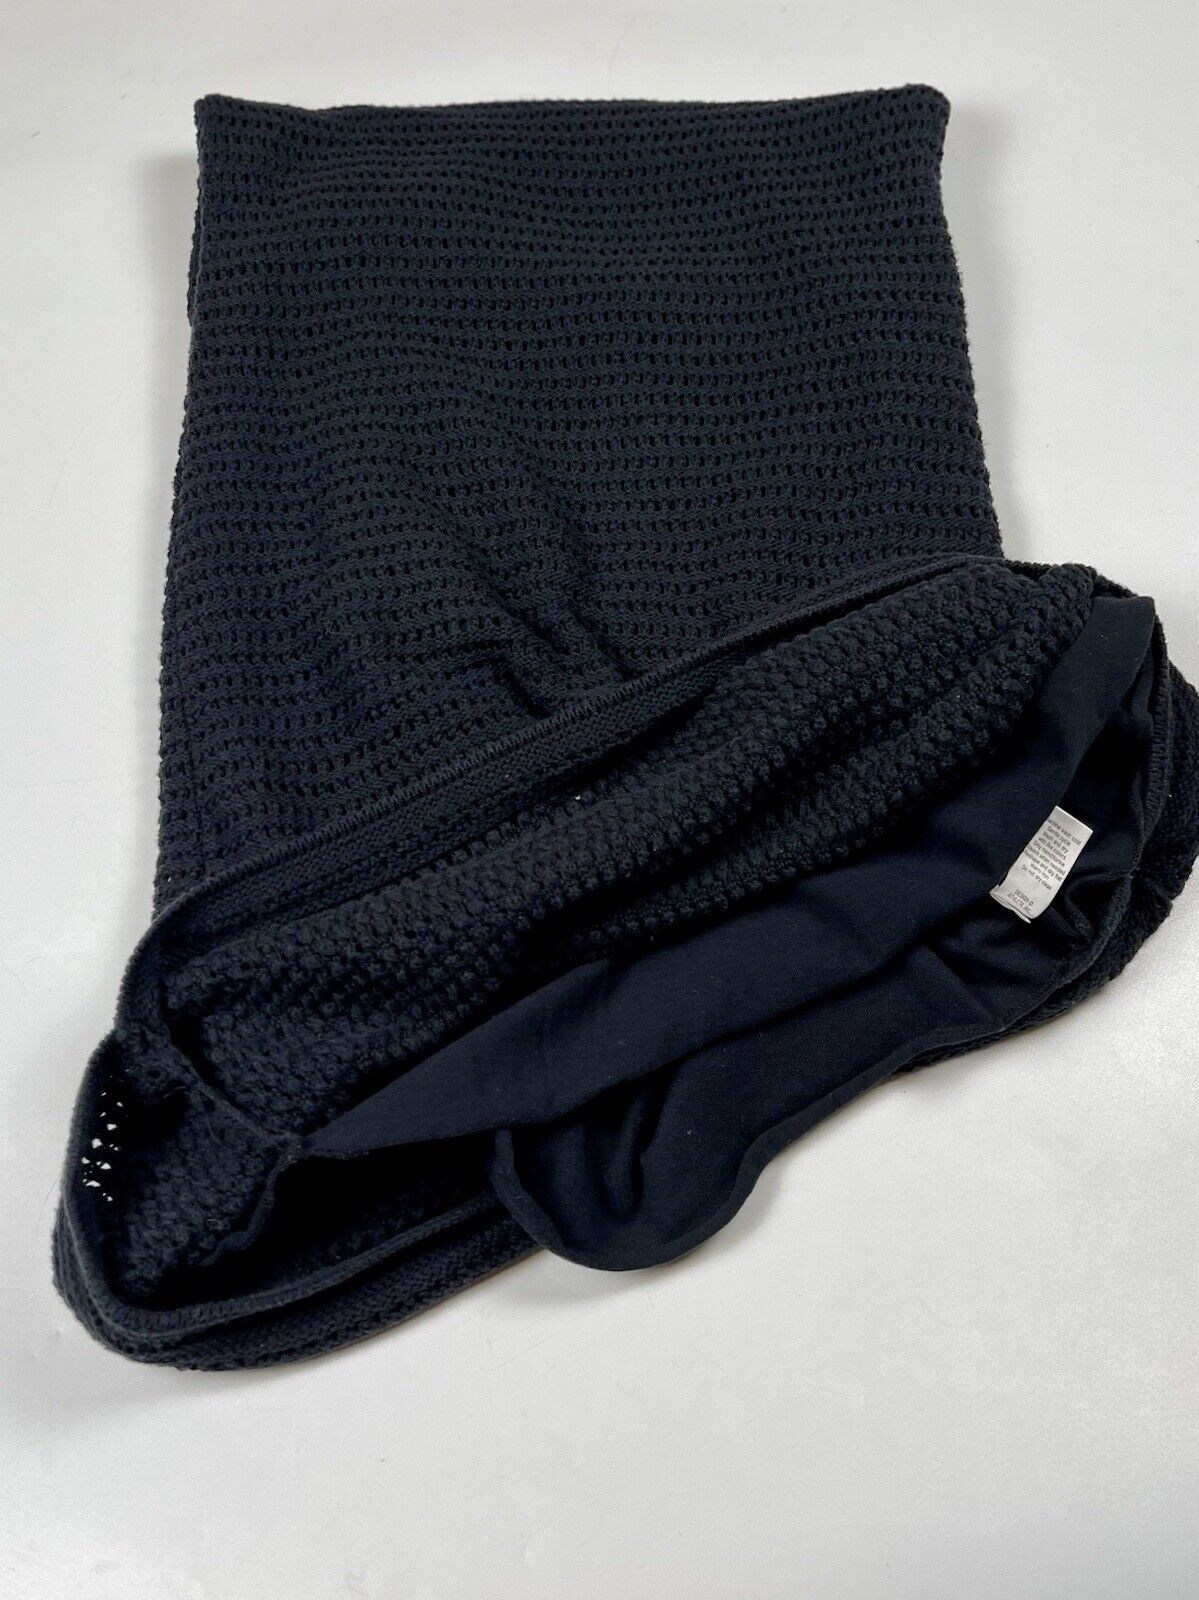 Athleta Kira Crochet Midi Tank Dress Black 100% C… - image 5